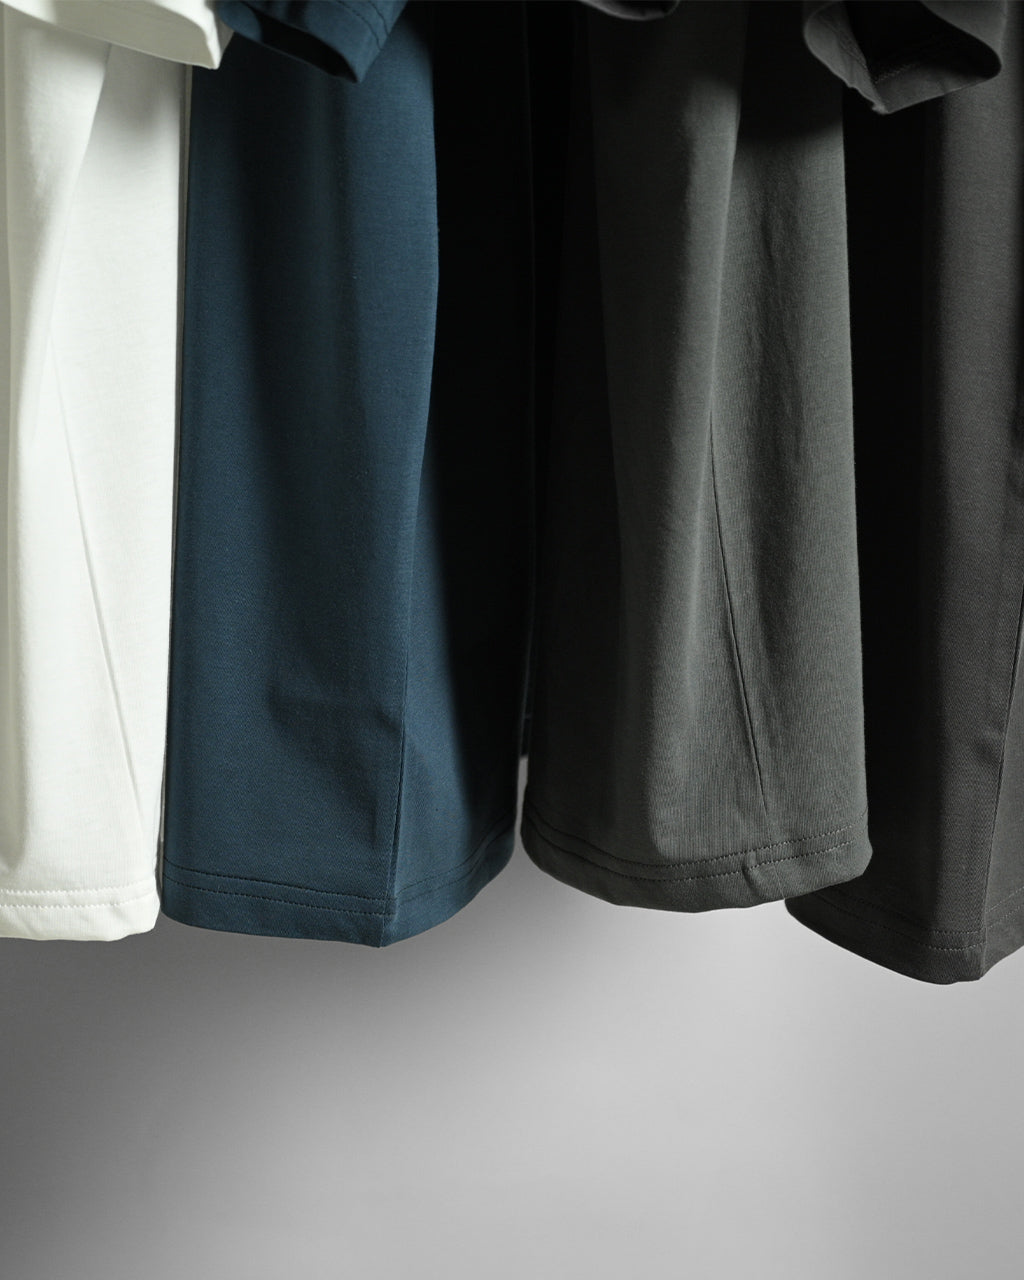 RAINMAKER レインメーカー クルーネック Tシャツ CREW-NECK T-SHIRT カットソー メンズ  RM241-036【送料無料】